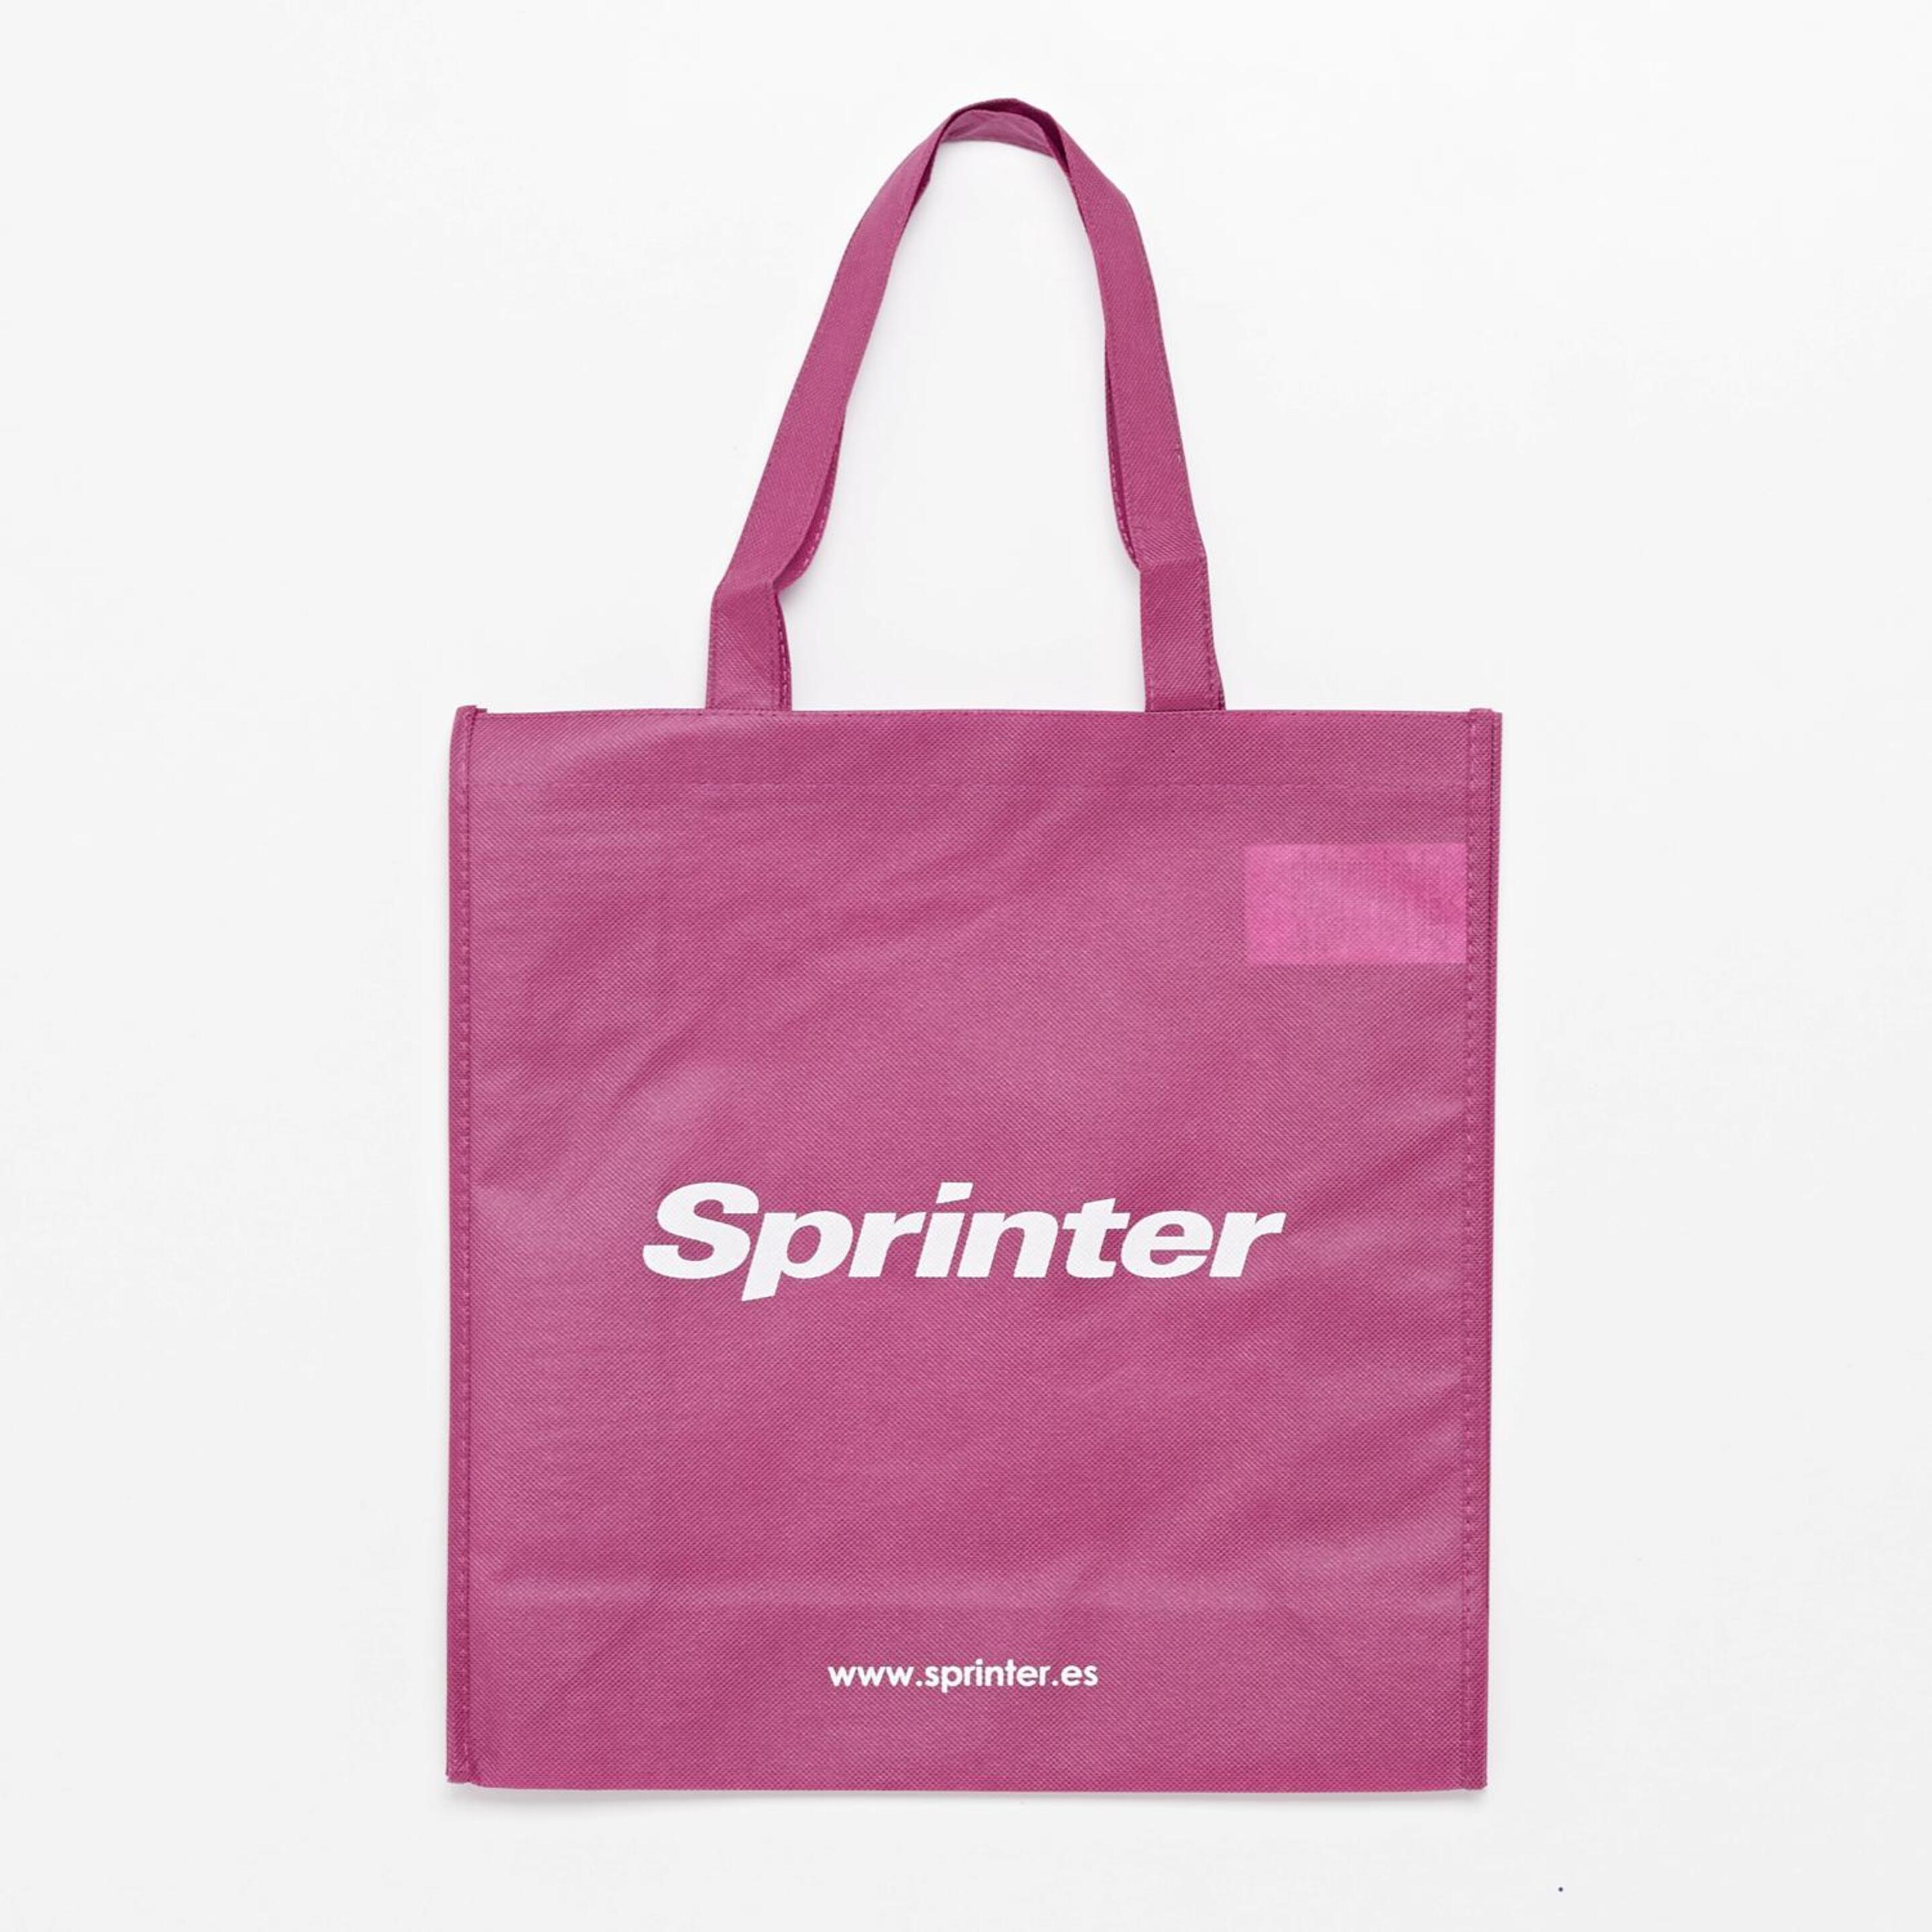 Silver Sprinter - morado - Bolsa Reutilizable